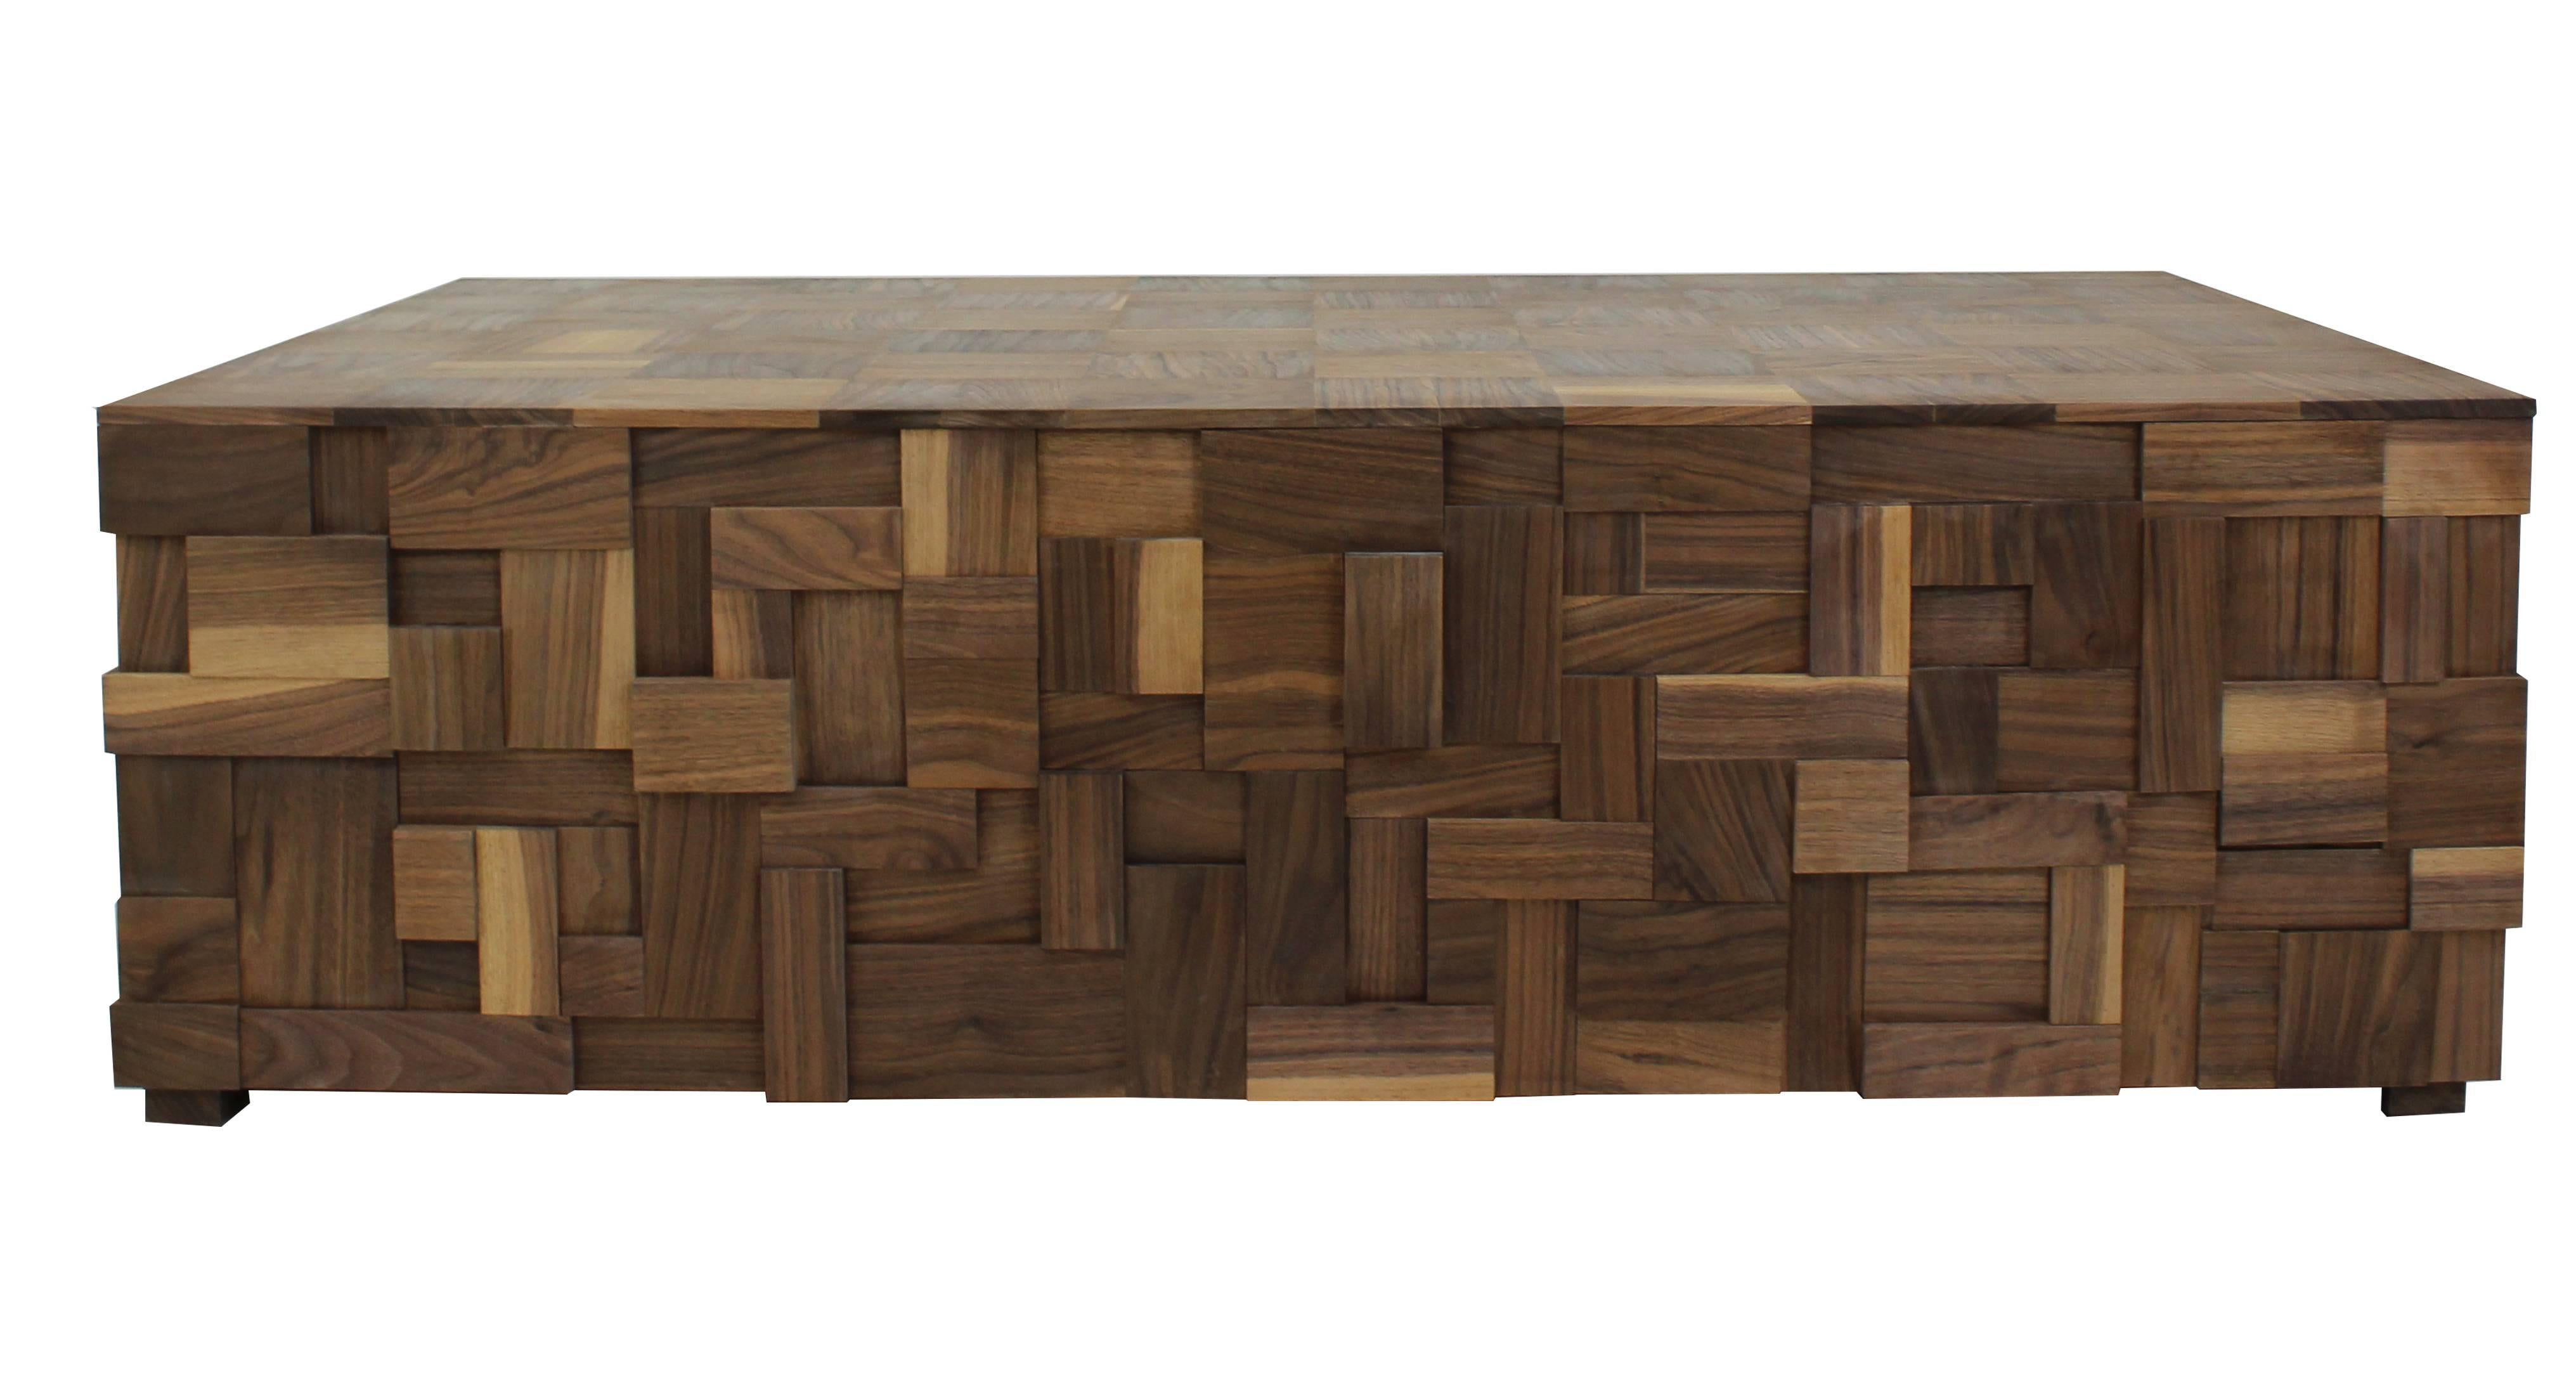 Cette table basse unique en son genre, fabriquée à la main dans notre studio de Norwalk, dans le Connecticut, allie modernité et rusticité. La table présente un cadre en peuplier et un extérieur en noyer découpé en mosaïque avec un plateau en